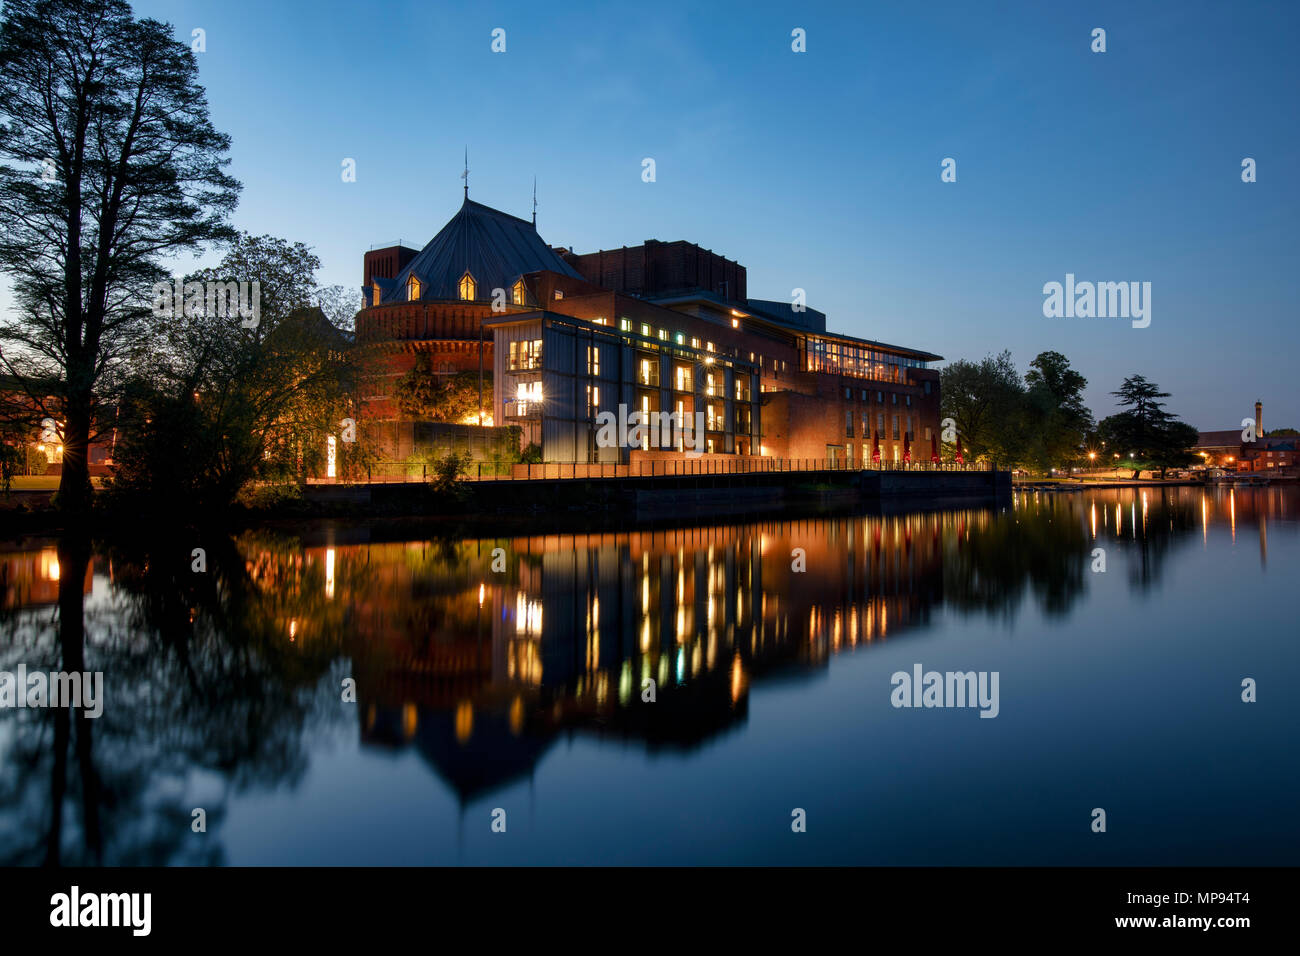 Royal Shakespeare Theatre riflettente nel fiume Avon al crepuscolo. Stratford Upon Avon, Warwickshire, Inghilterra Foto Stock